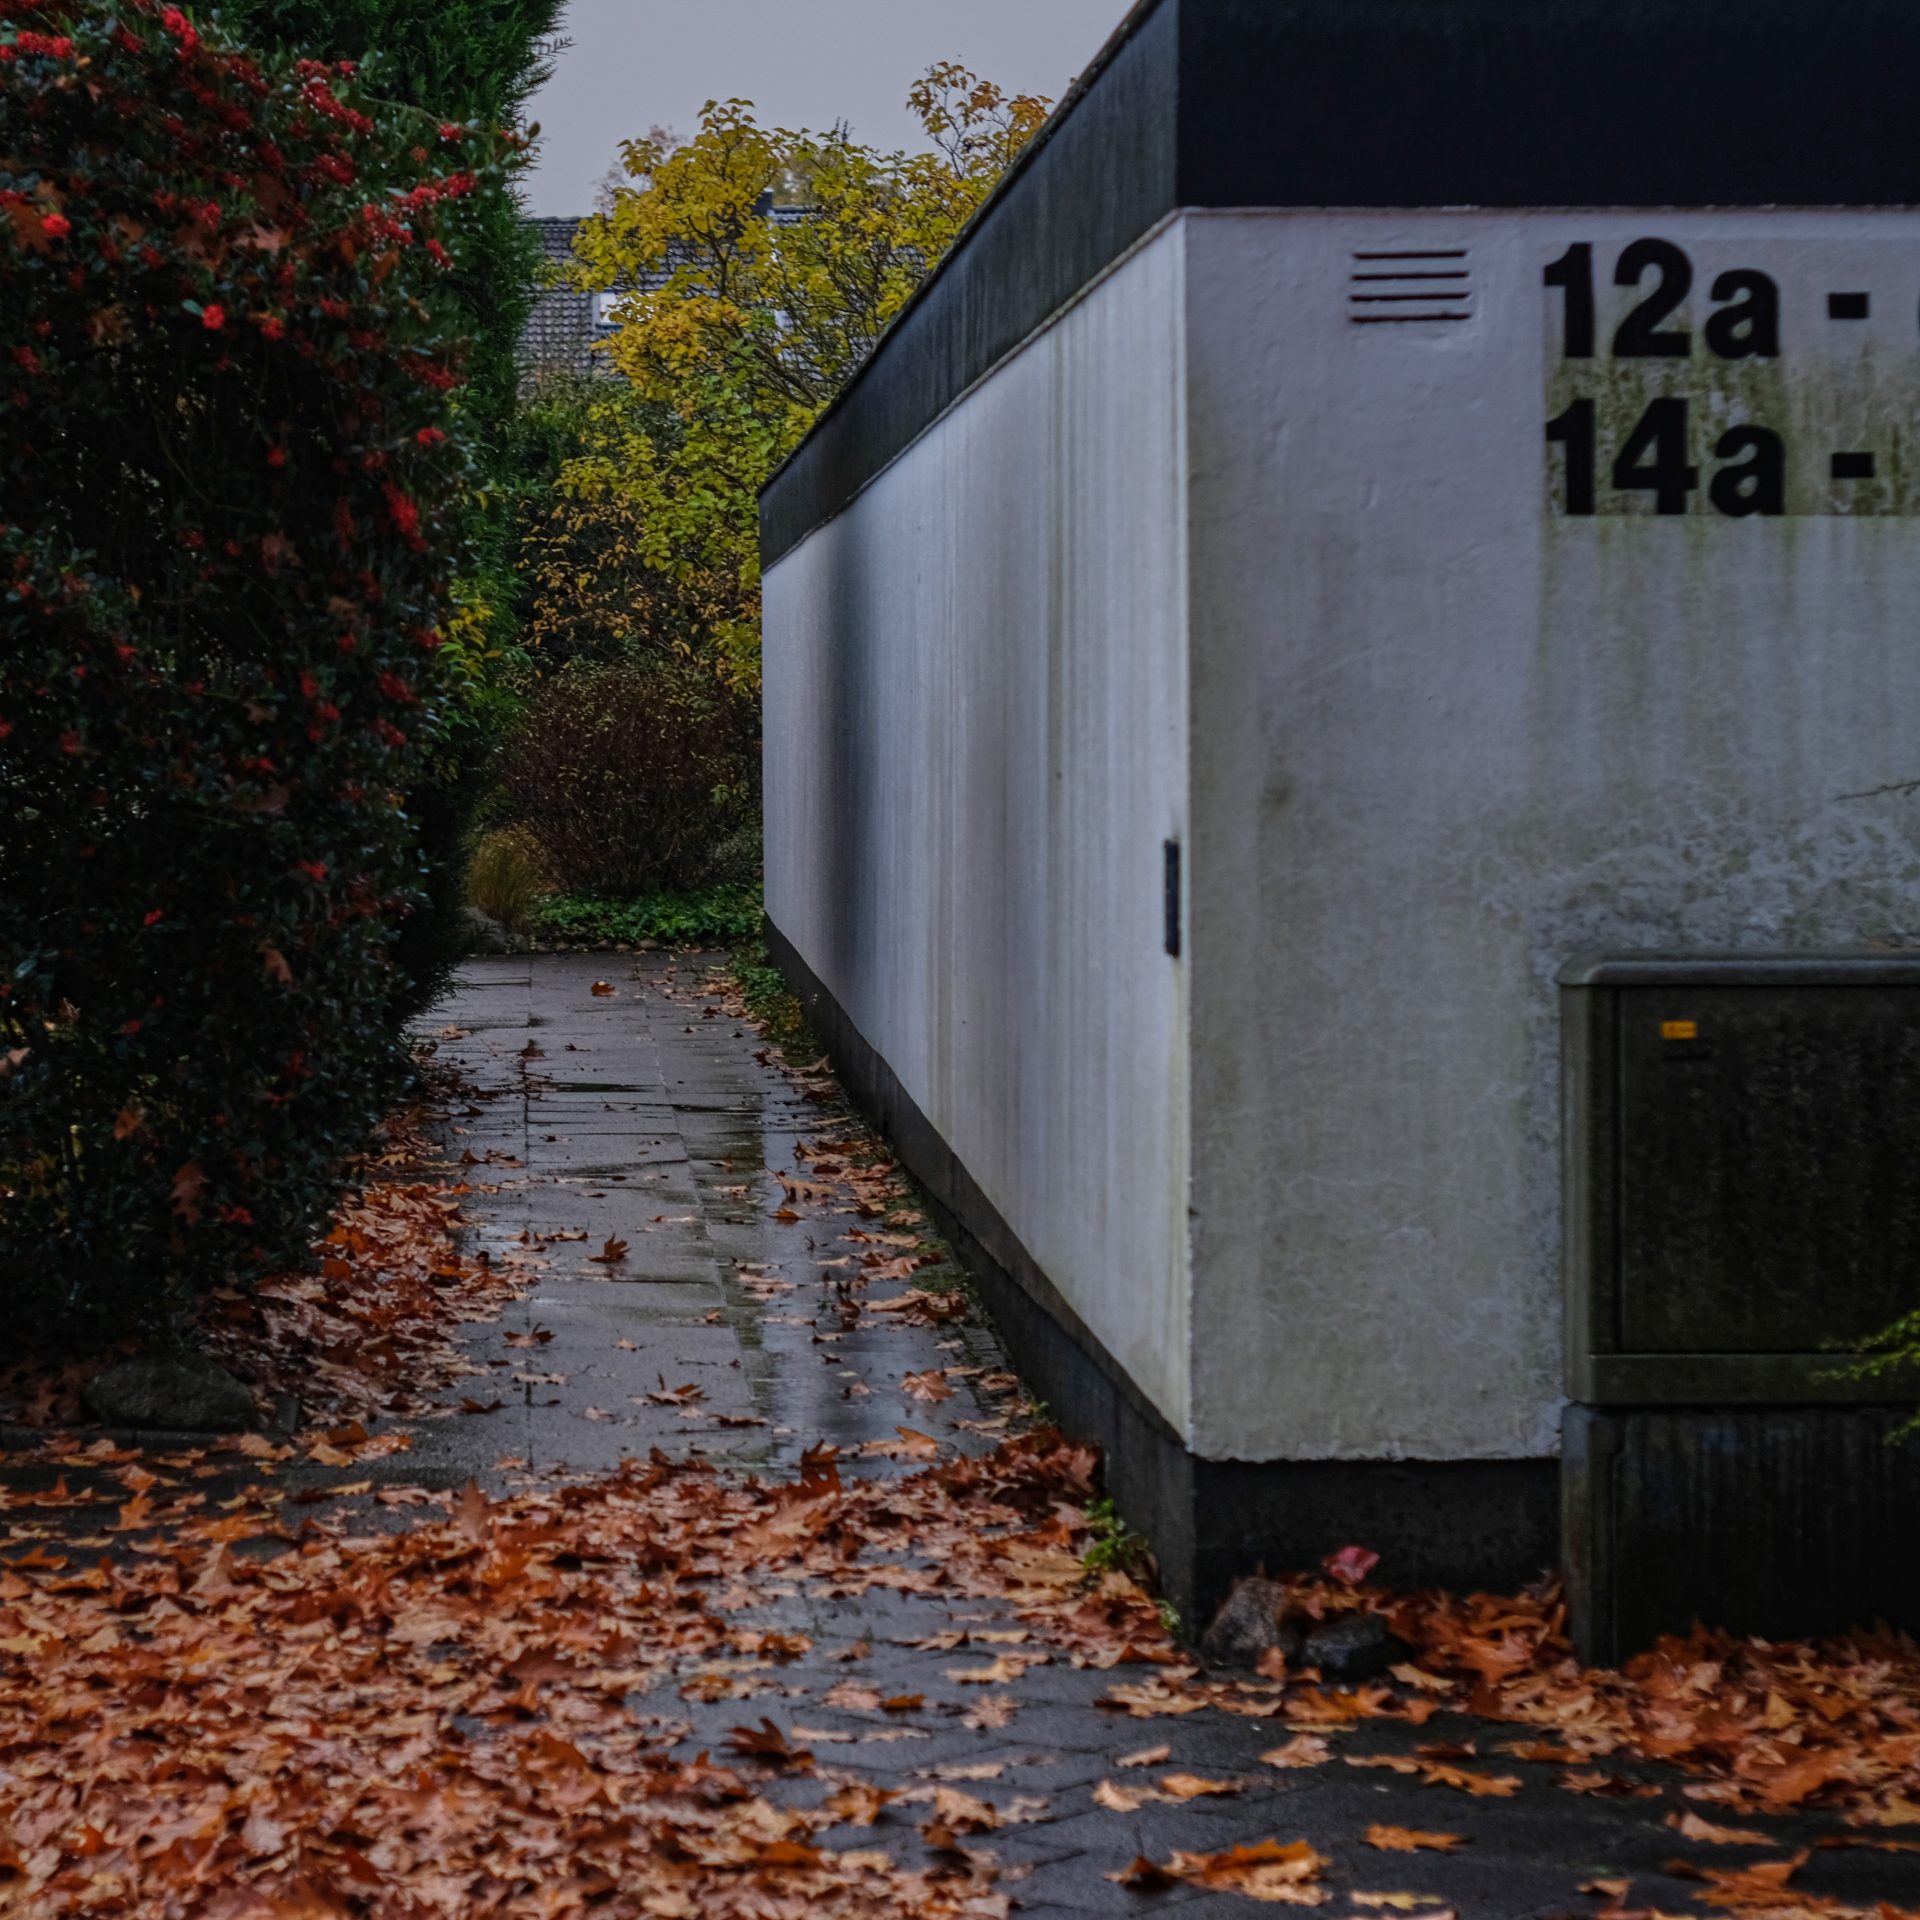 Fallen leaves on wet concrete, white terrace housing, holsteiner Straße, Reinbek, Germany. Herbstlaub auf nassem Beton vor Reihenhäusern an der Holsteiner Straße in Reinbek